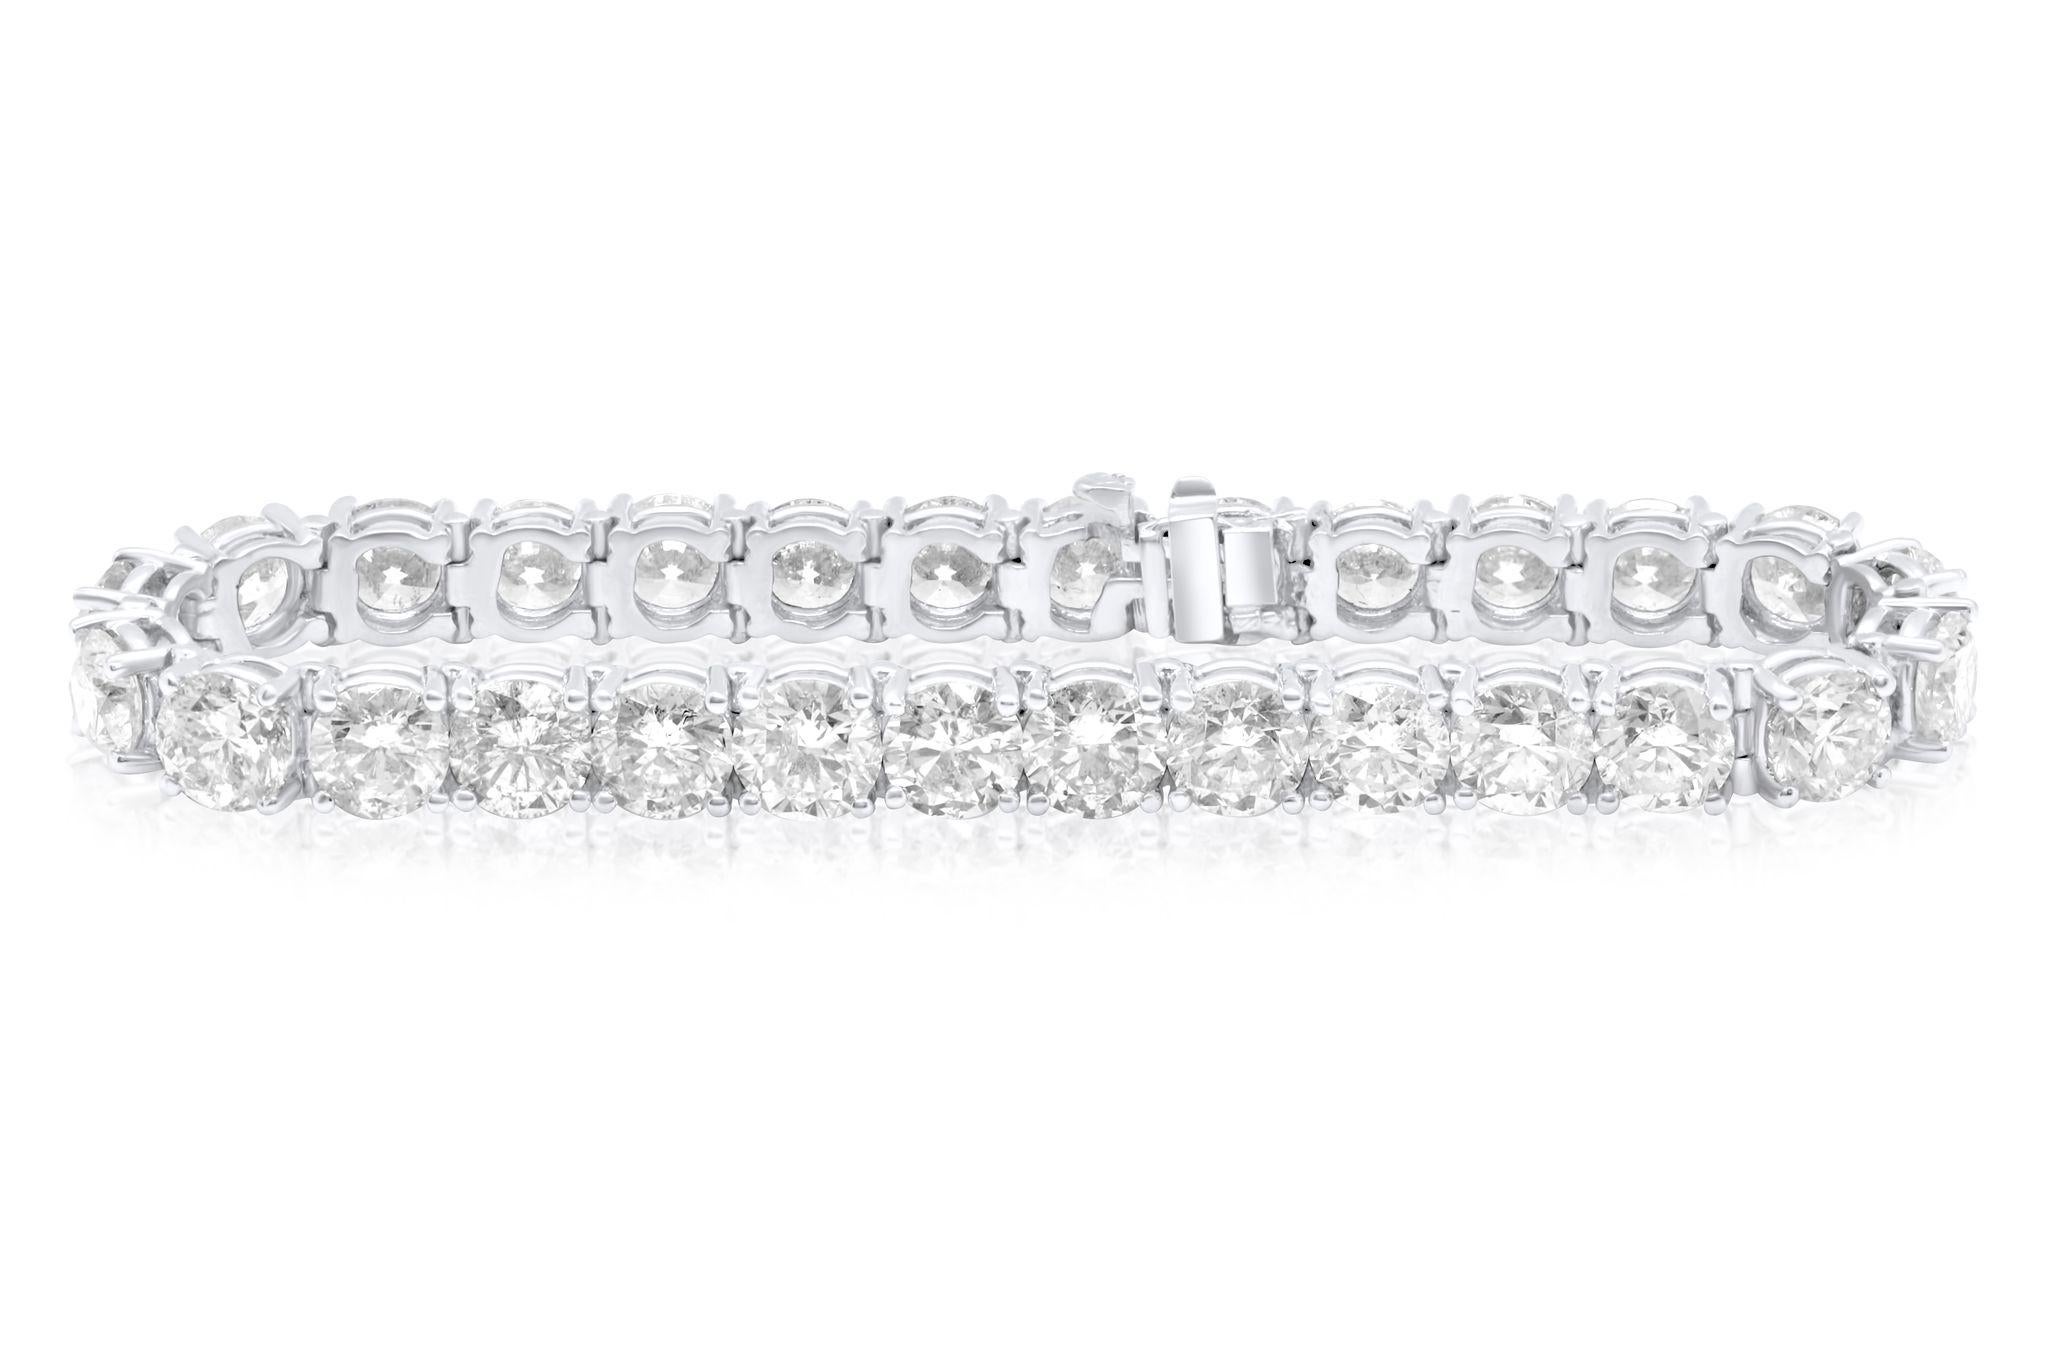 Bracelet de tennis en or blanc 18 kt à 4 branches diamantées  15.00 cts tw de diamants ronds 0.41 chaque carat.
